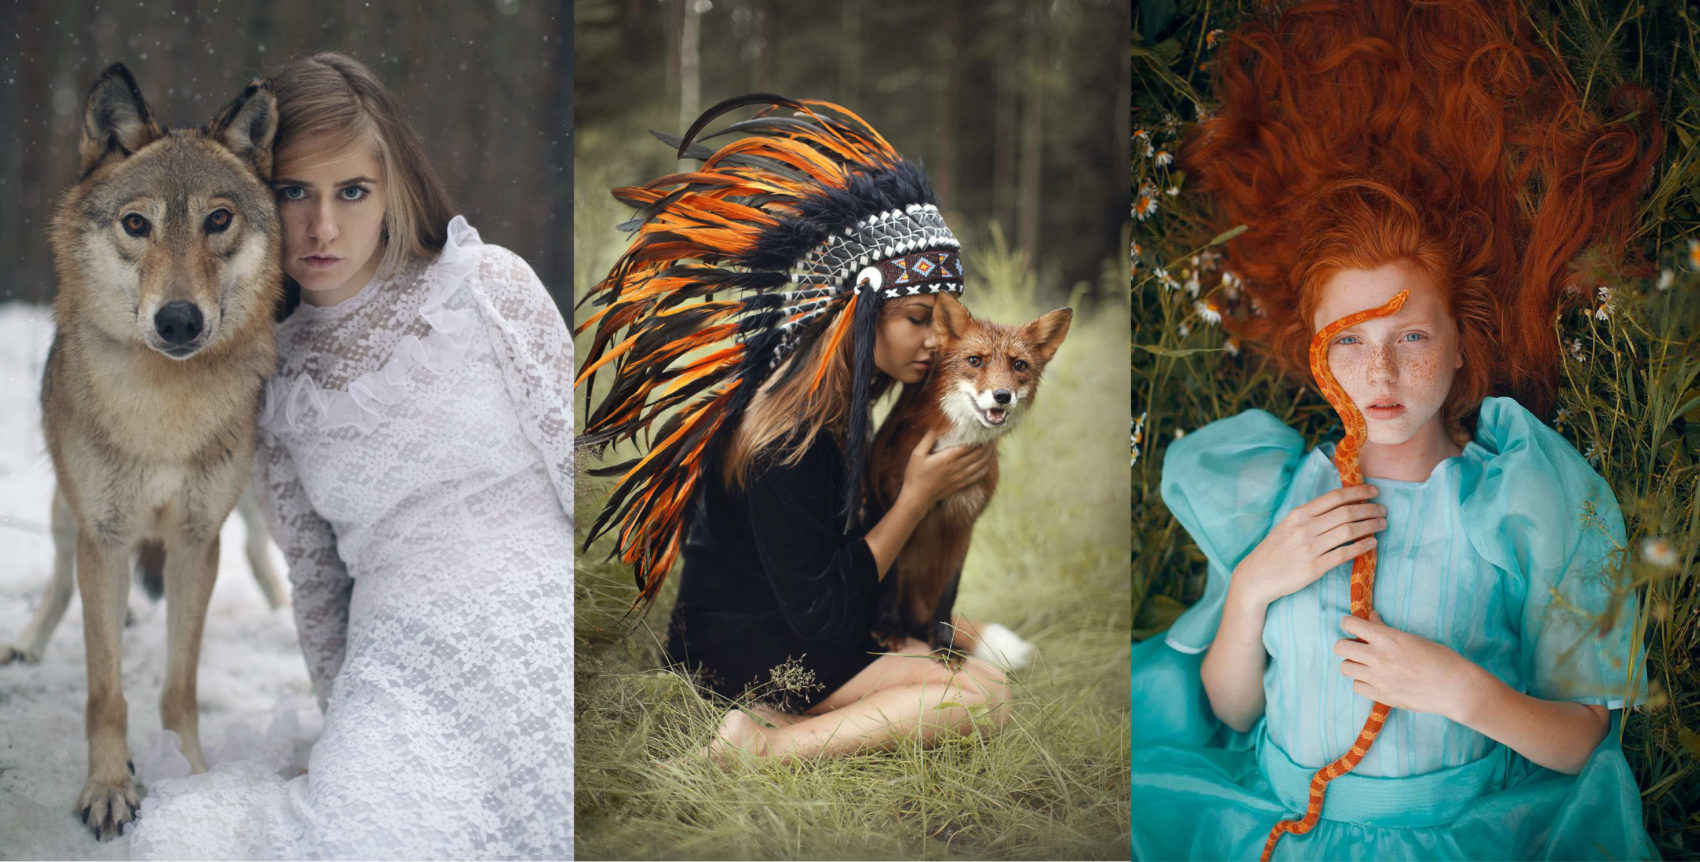 Beauty Fine Art Portraits Photography With Real Animals By Katerina Plotnikova